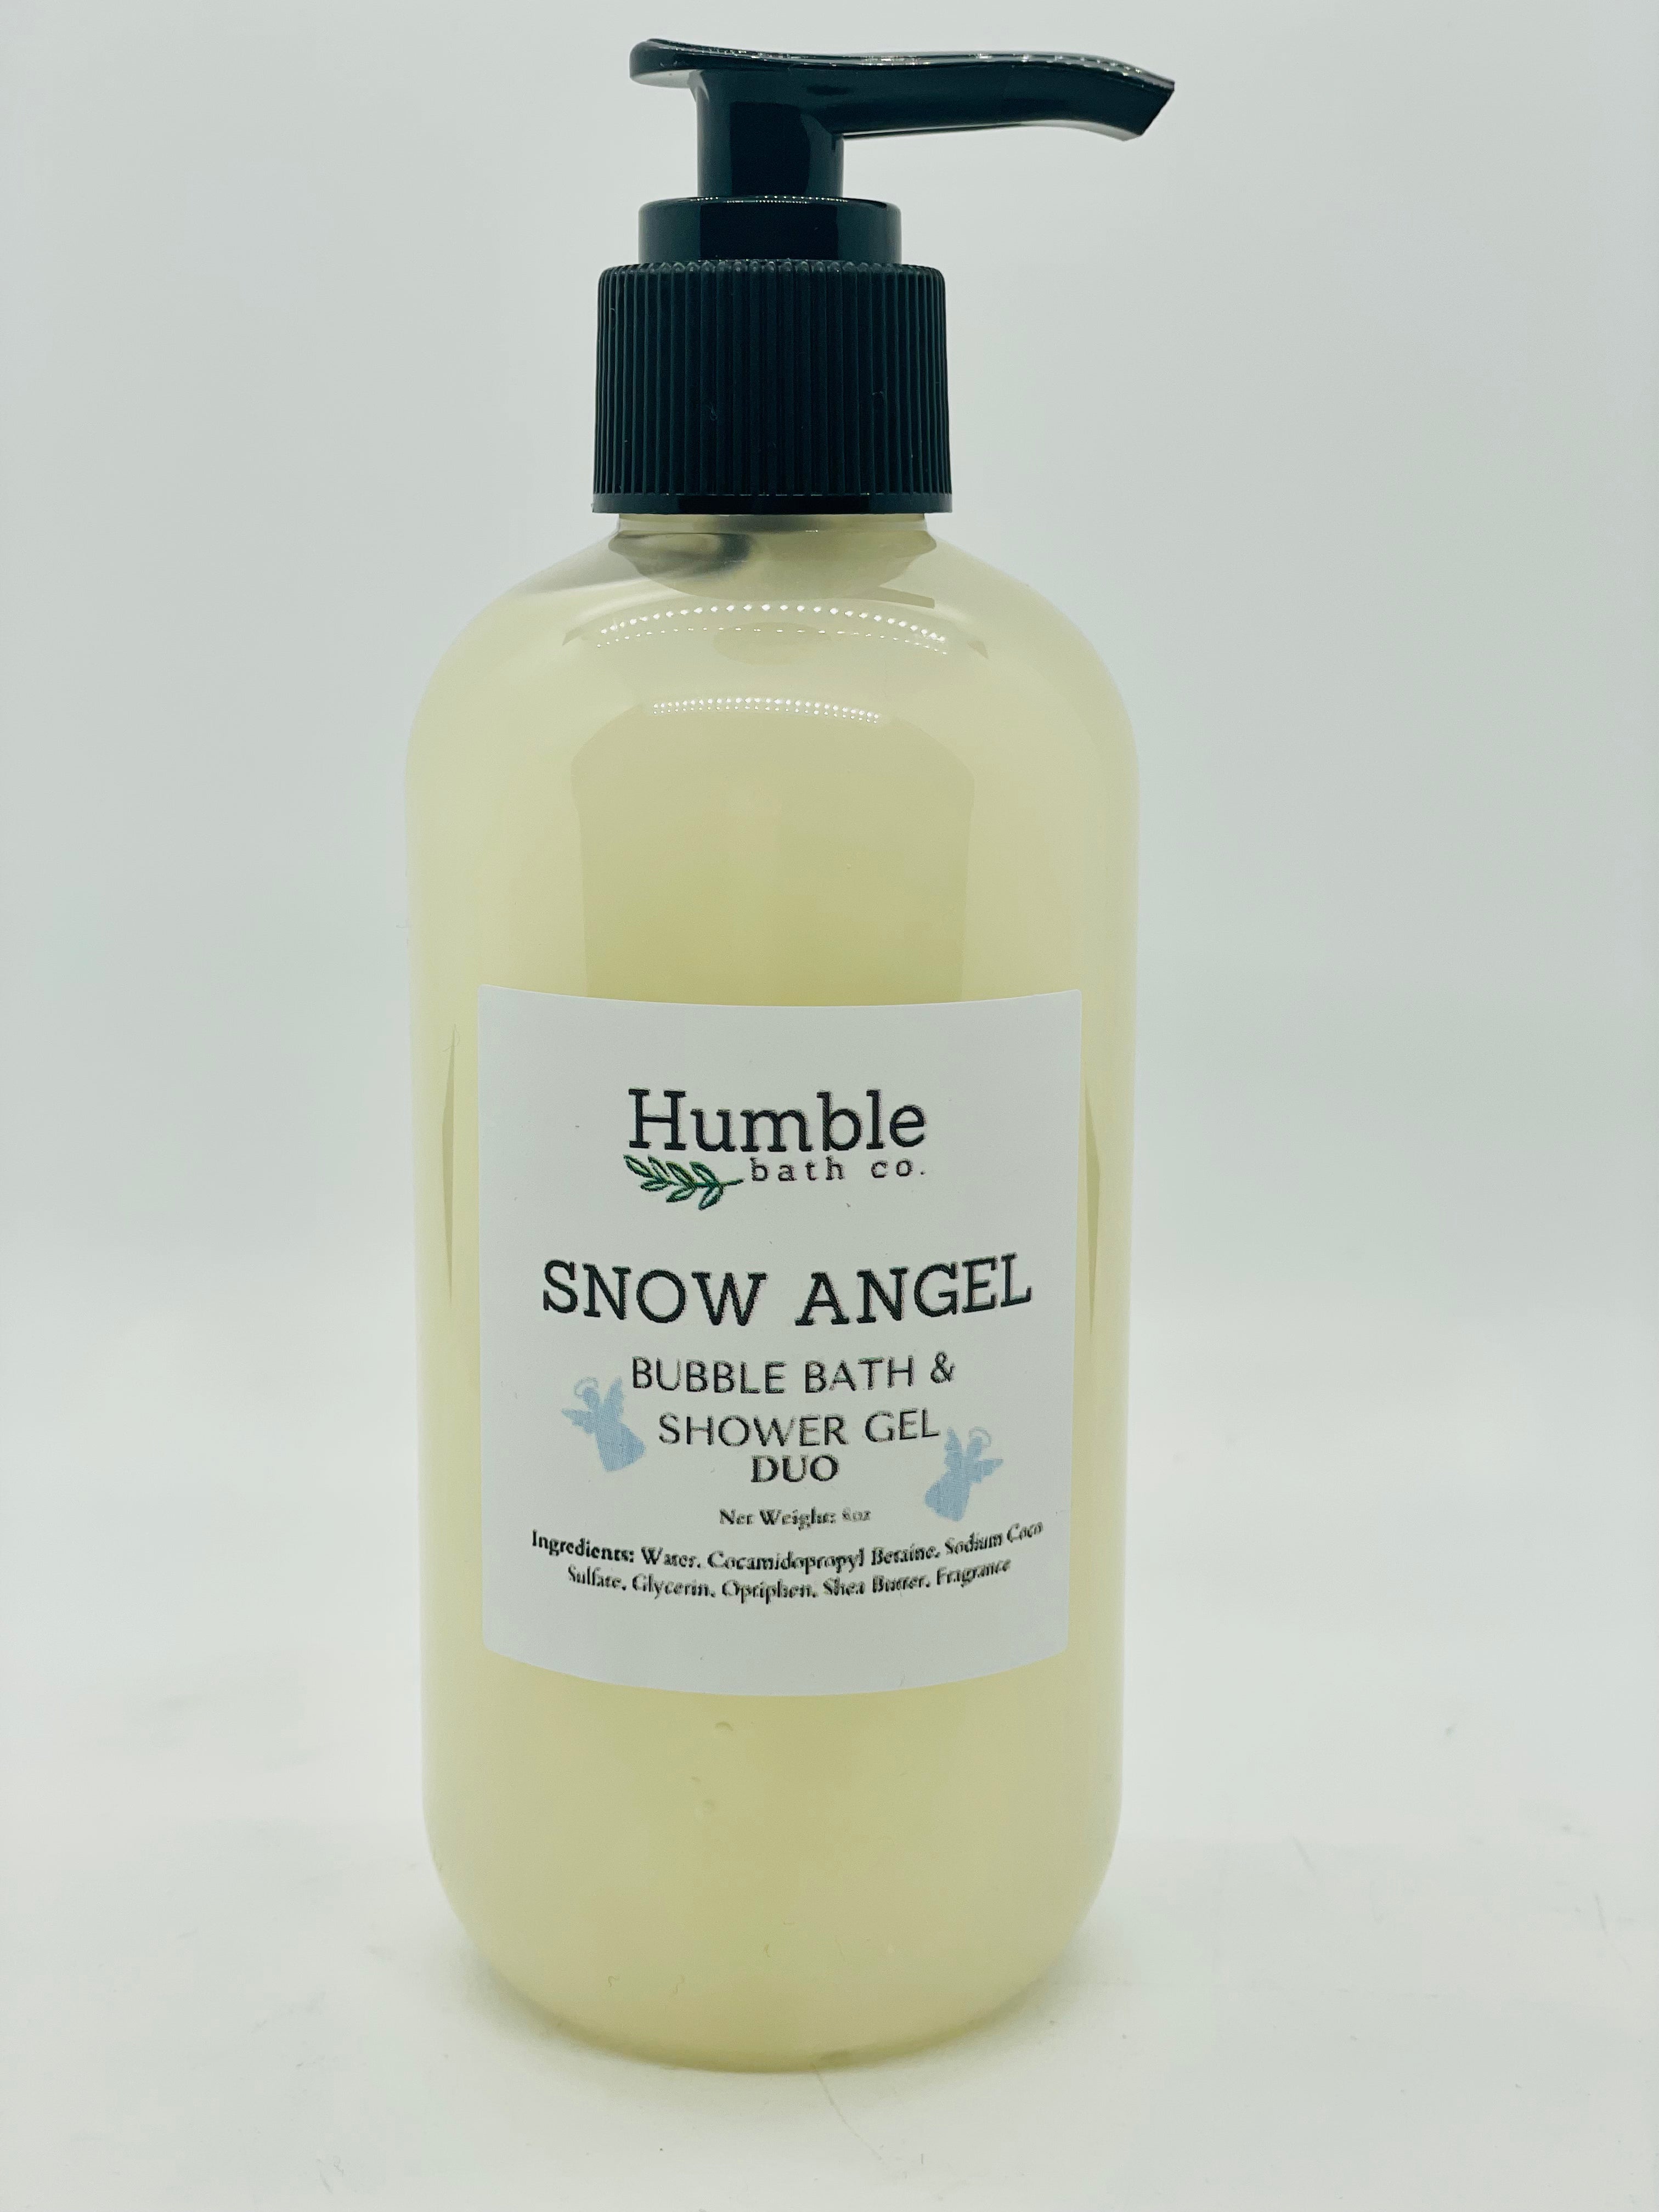 Snow Angel Bubble Bath & Shower Gel Duo